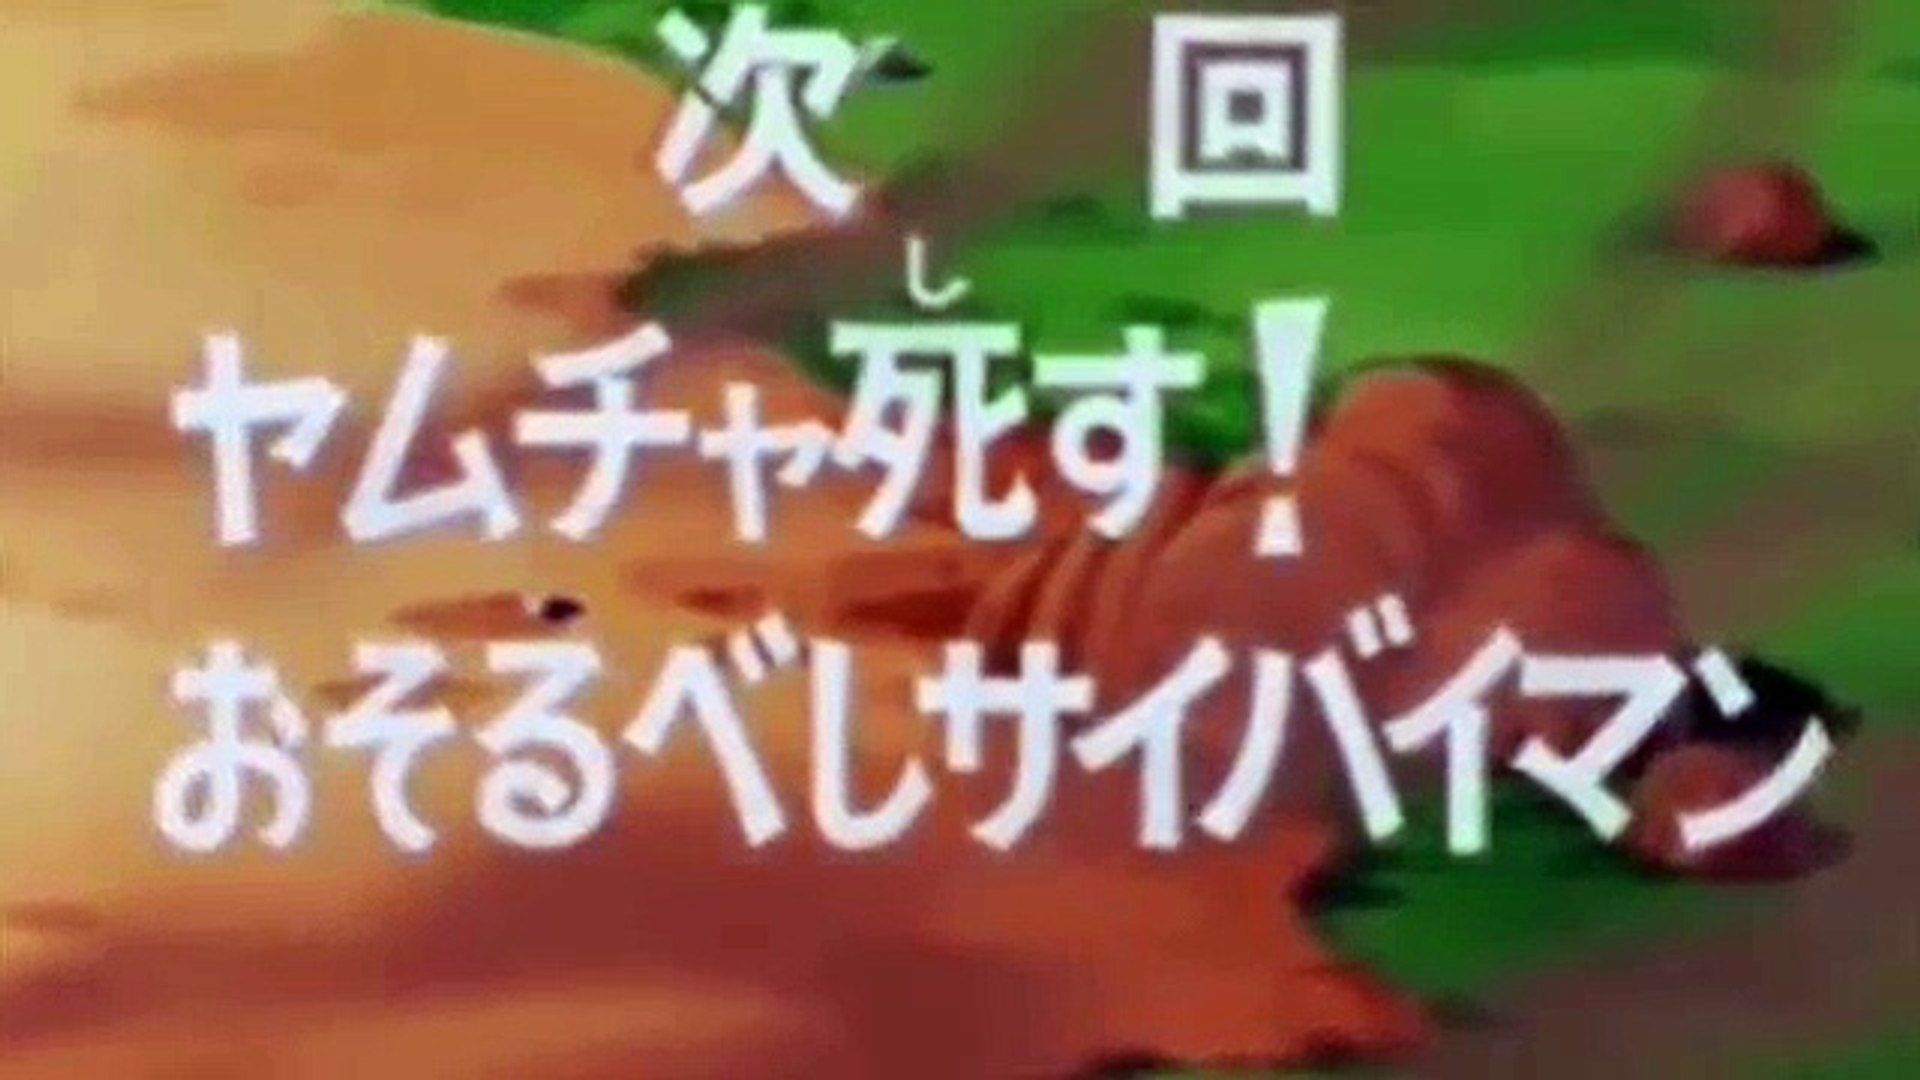 ドラゴンボールz次回予告 比較 野沢雅子vs田島直弥 Dailymotion Video